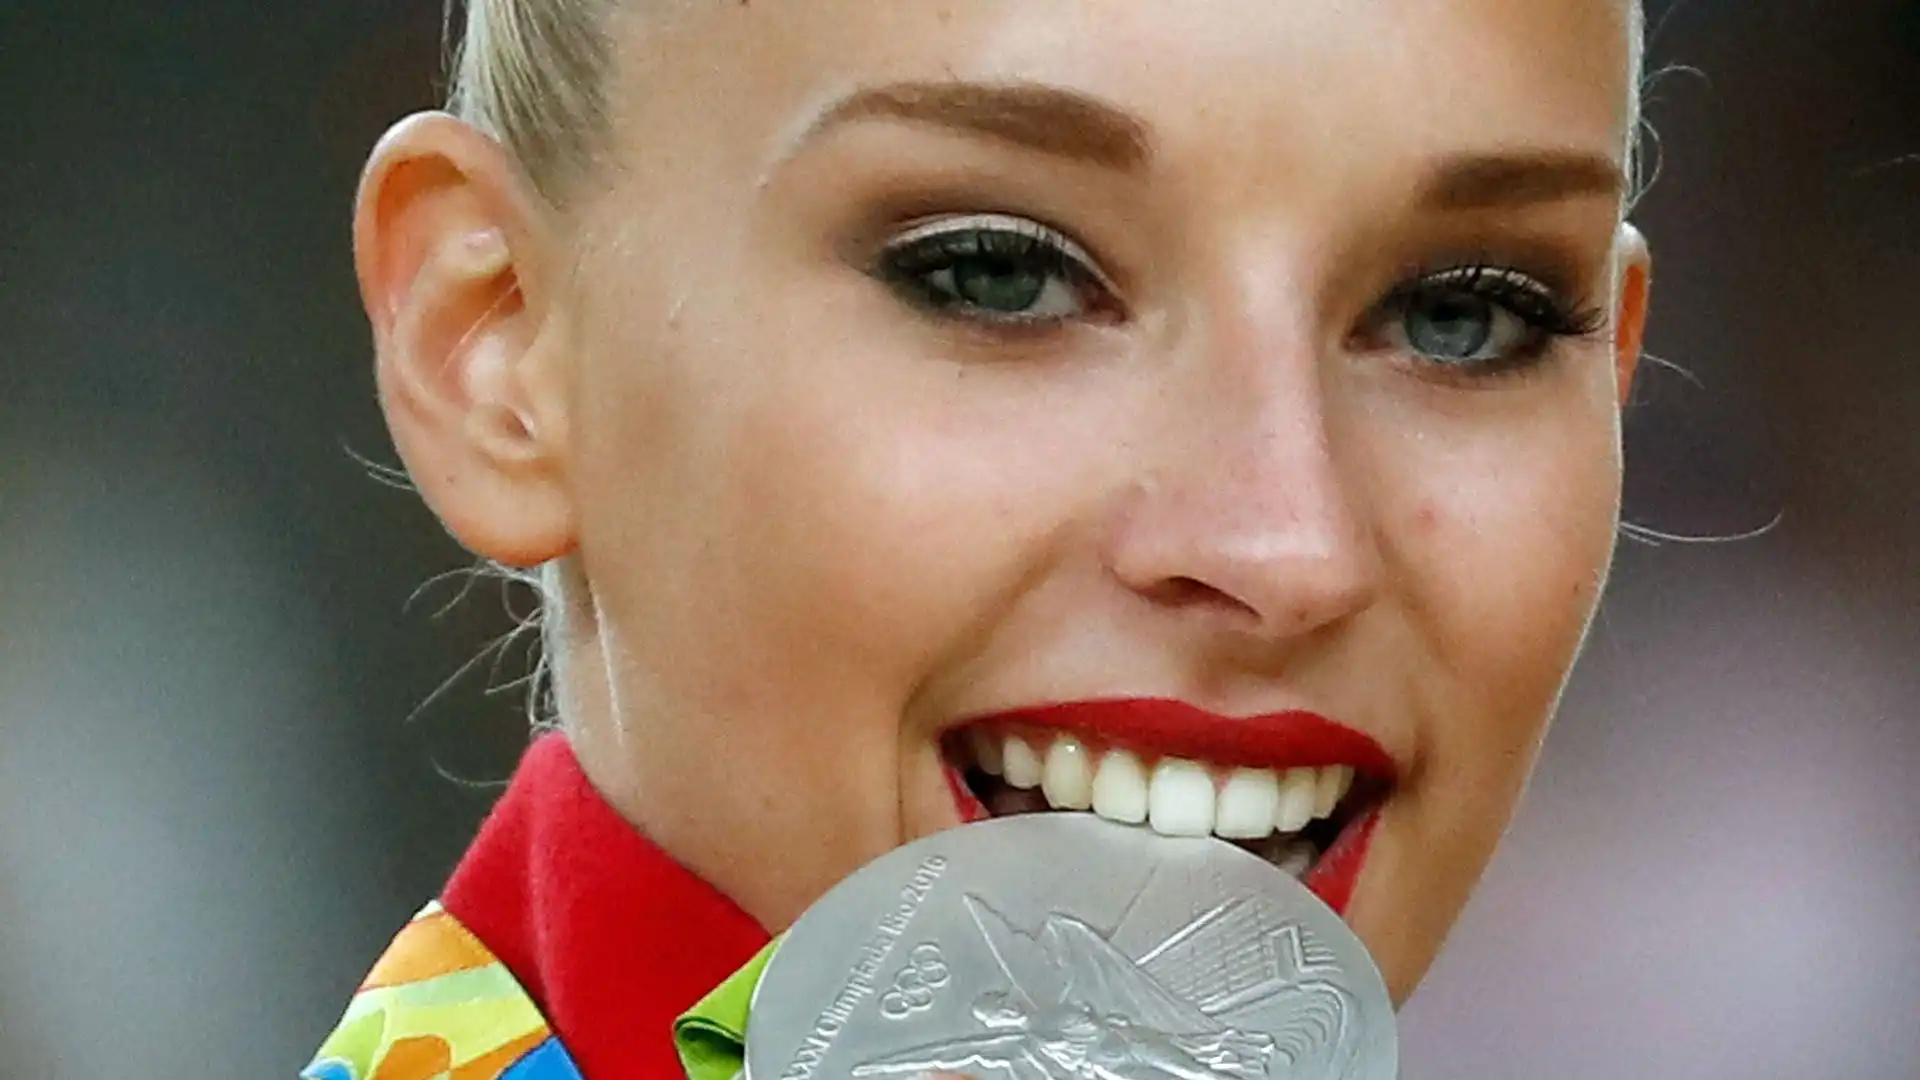 È la più giovane ginnasta ad avere vinto i mondiali di ginnastica ritmica, conquistando l'oro nella gara all-around a Kiev 2013 all'età di 15 anni